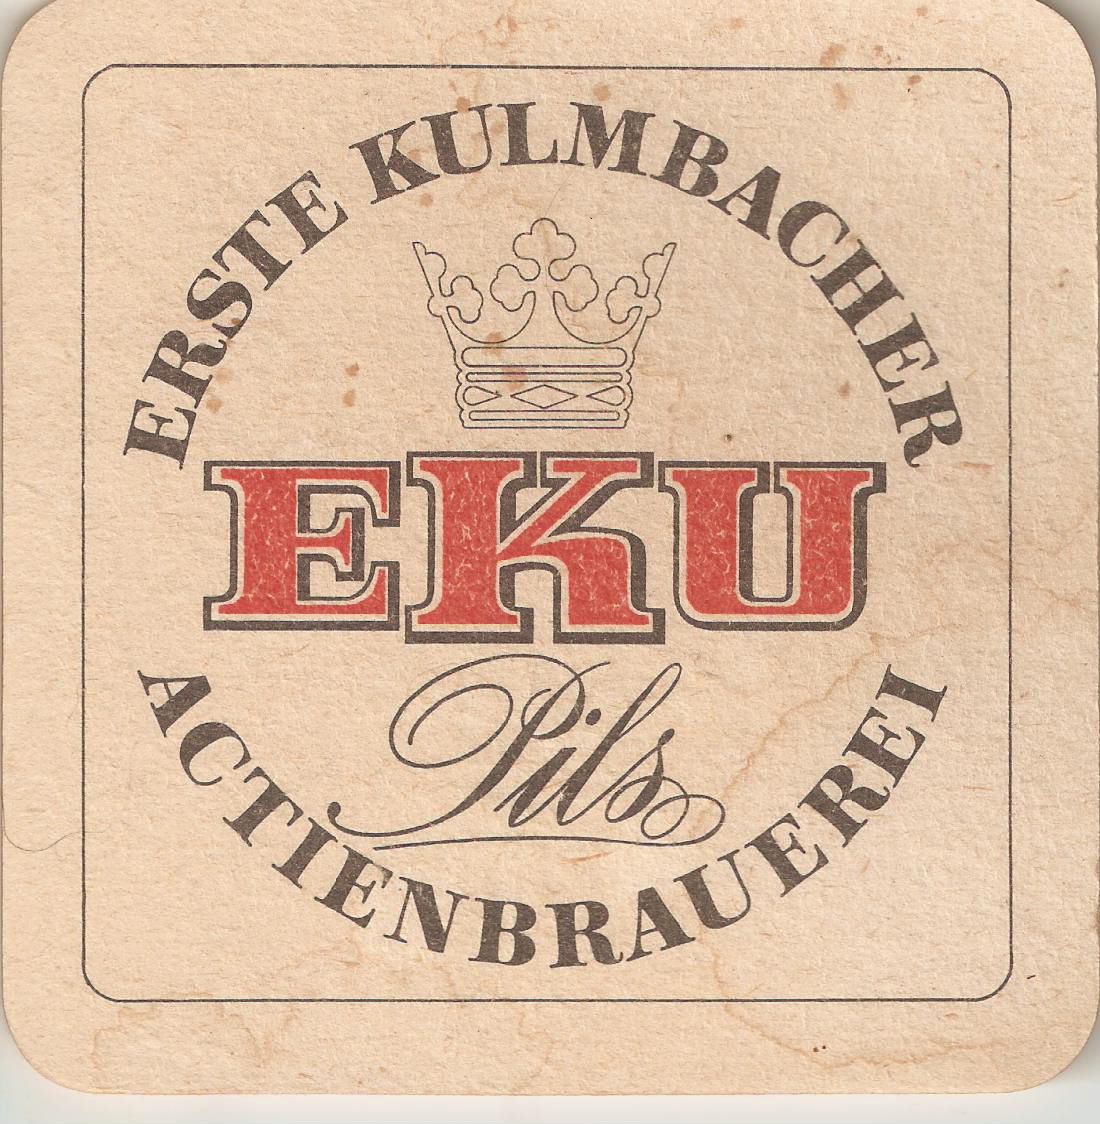 kulmbacher